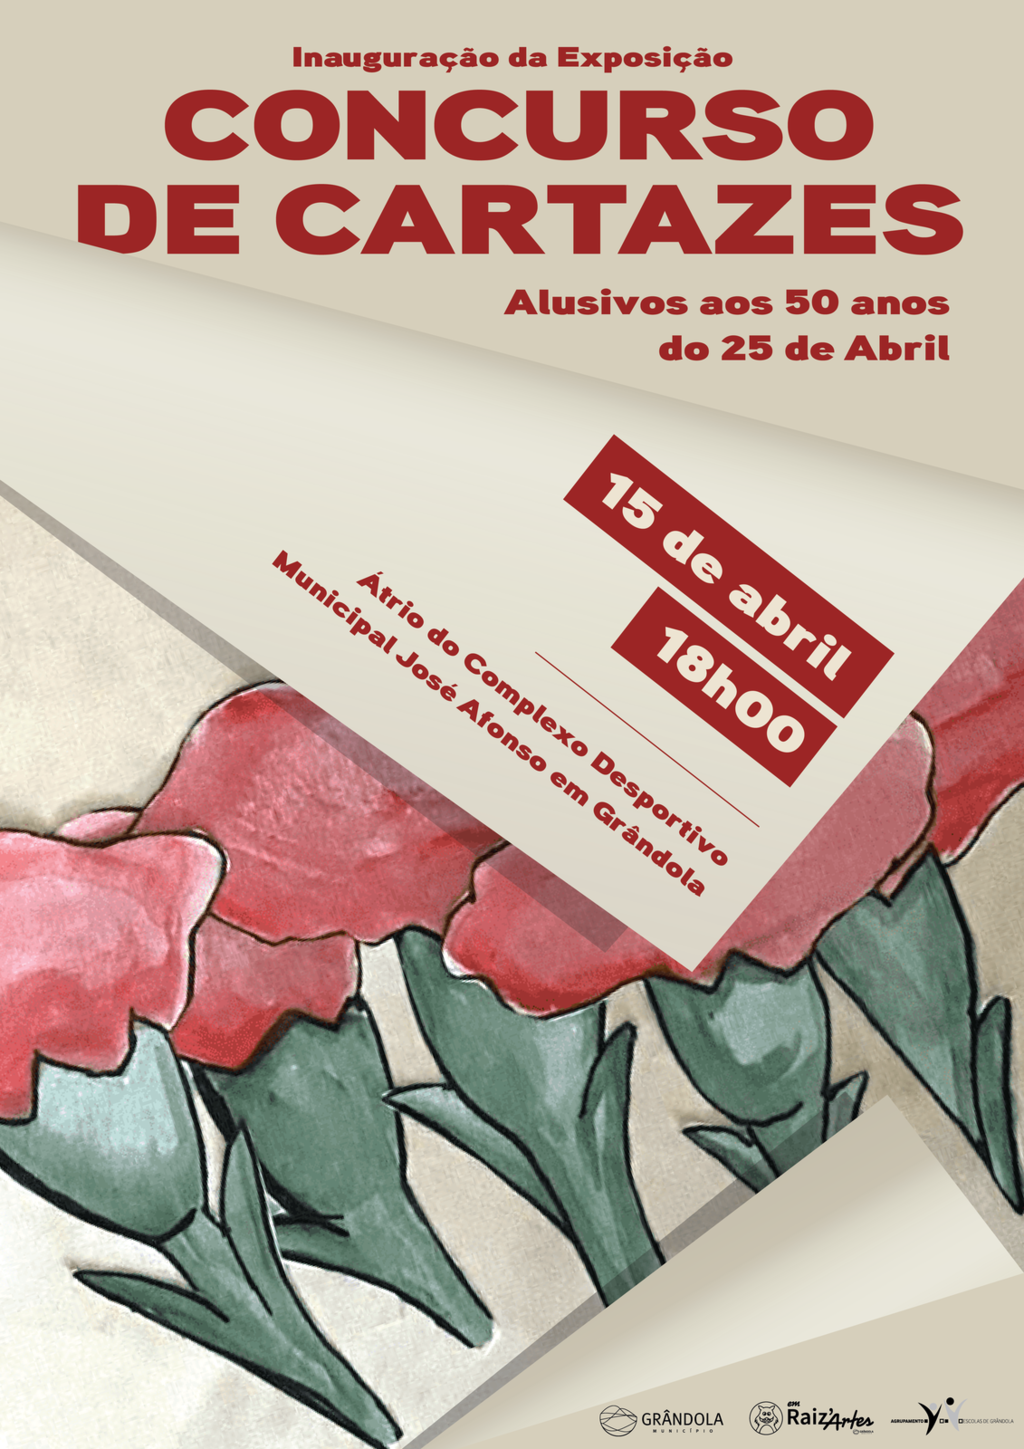 EXPOSIÇÃO |  Inauguração da Exposição “Concurso de Cartazes Alusivos aos 50 anos do 25 de abril”